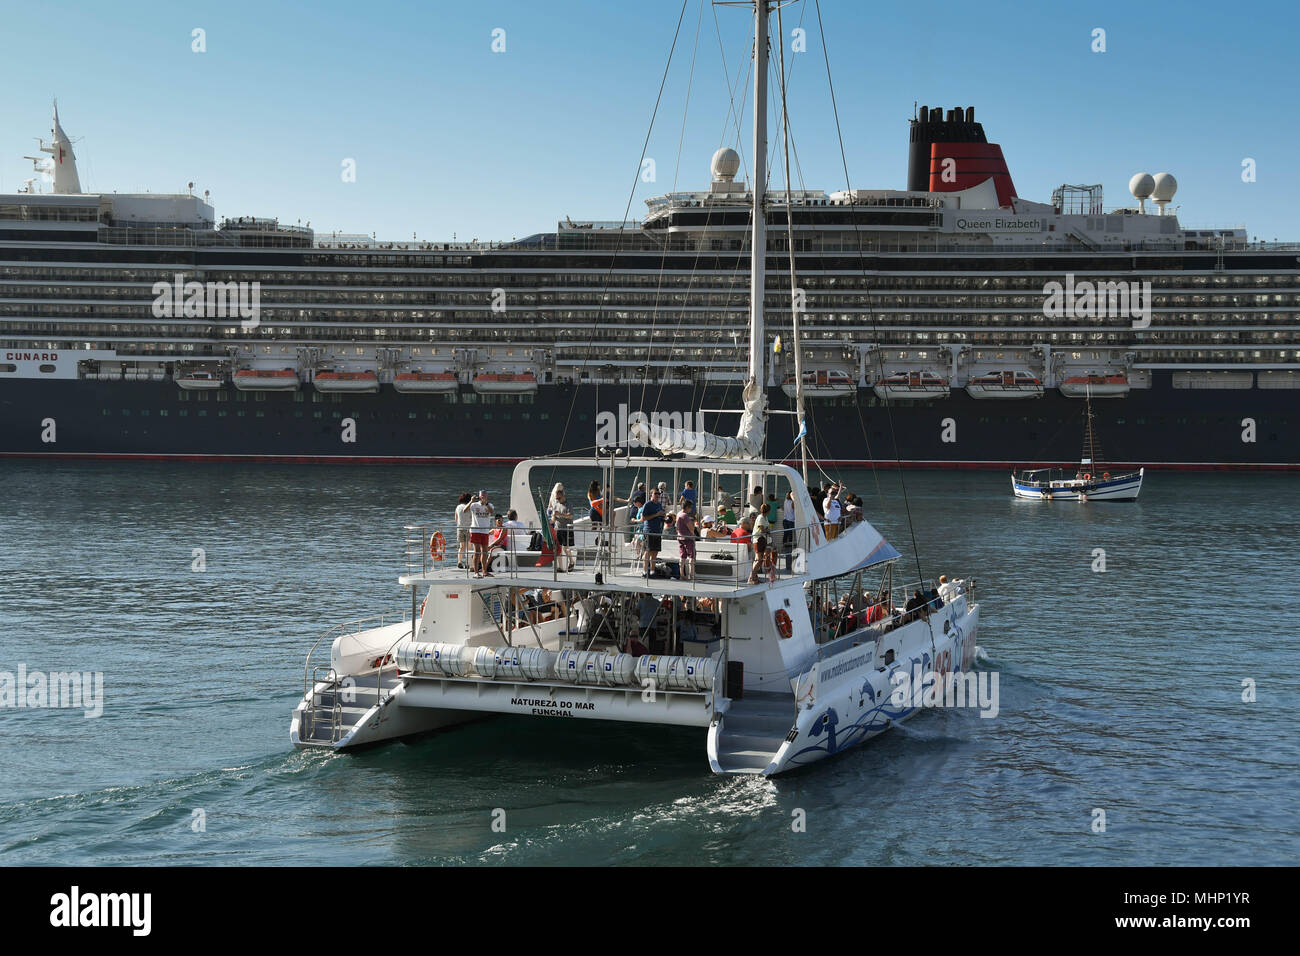 Un catamaran de quitter le port de Funchal, Madère avec les touristes sur une croisière. Le bateau de croisière Queen Elizabeth est dans l'arrière-plan Banque D'Images